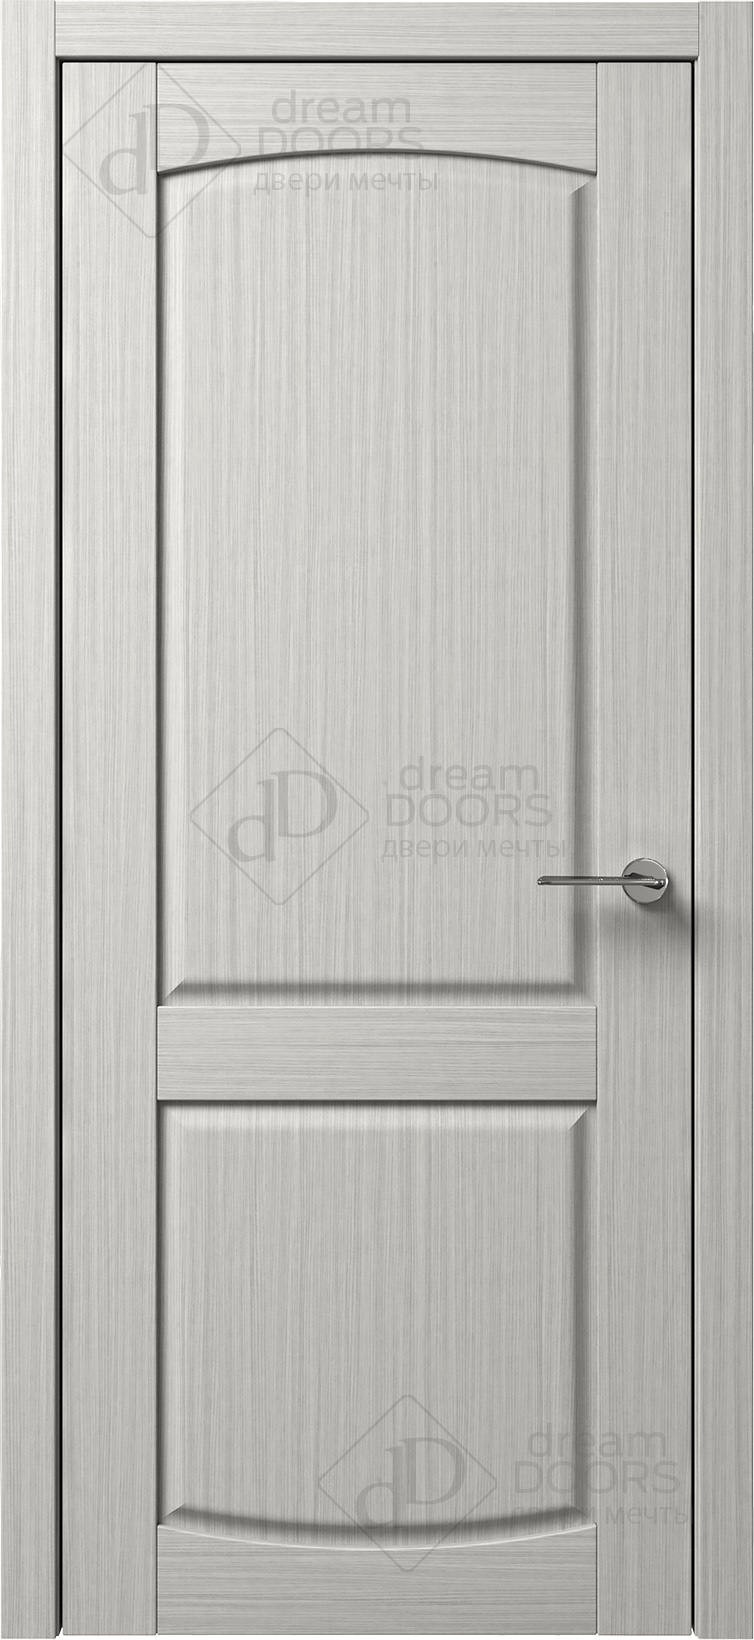 Dream Doors Межкомнатная дверь B6-3, арт. 5565 - фото №1